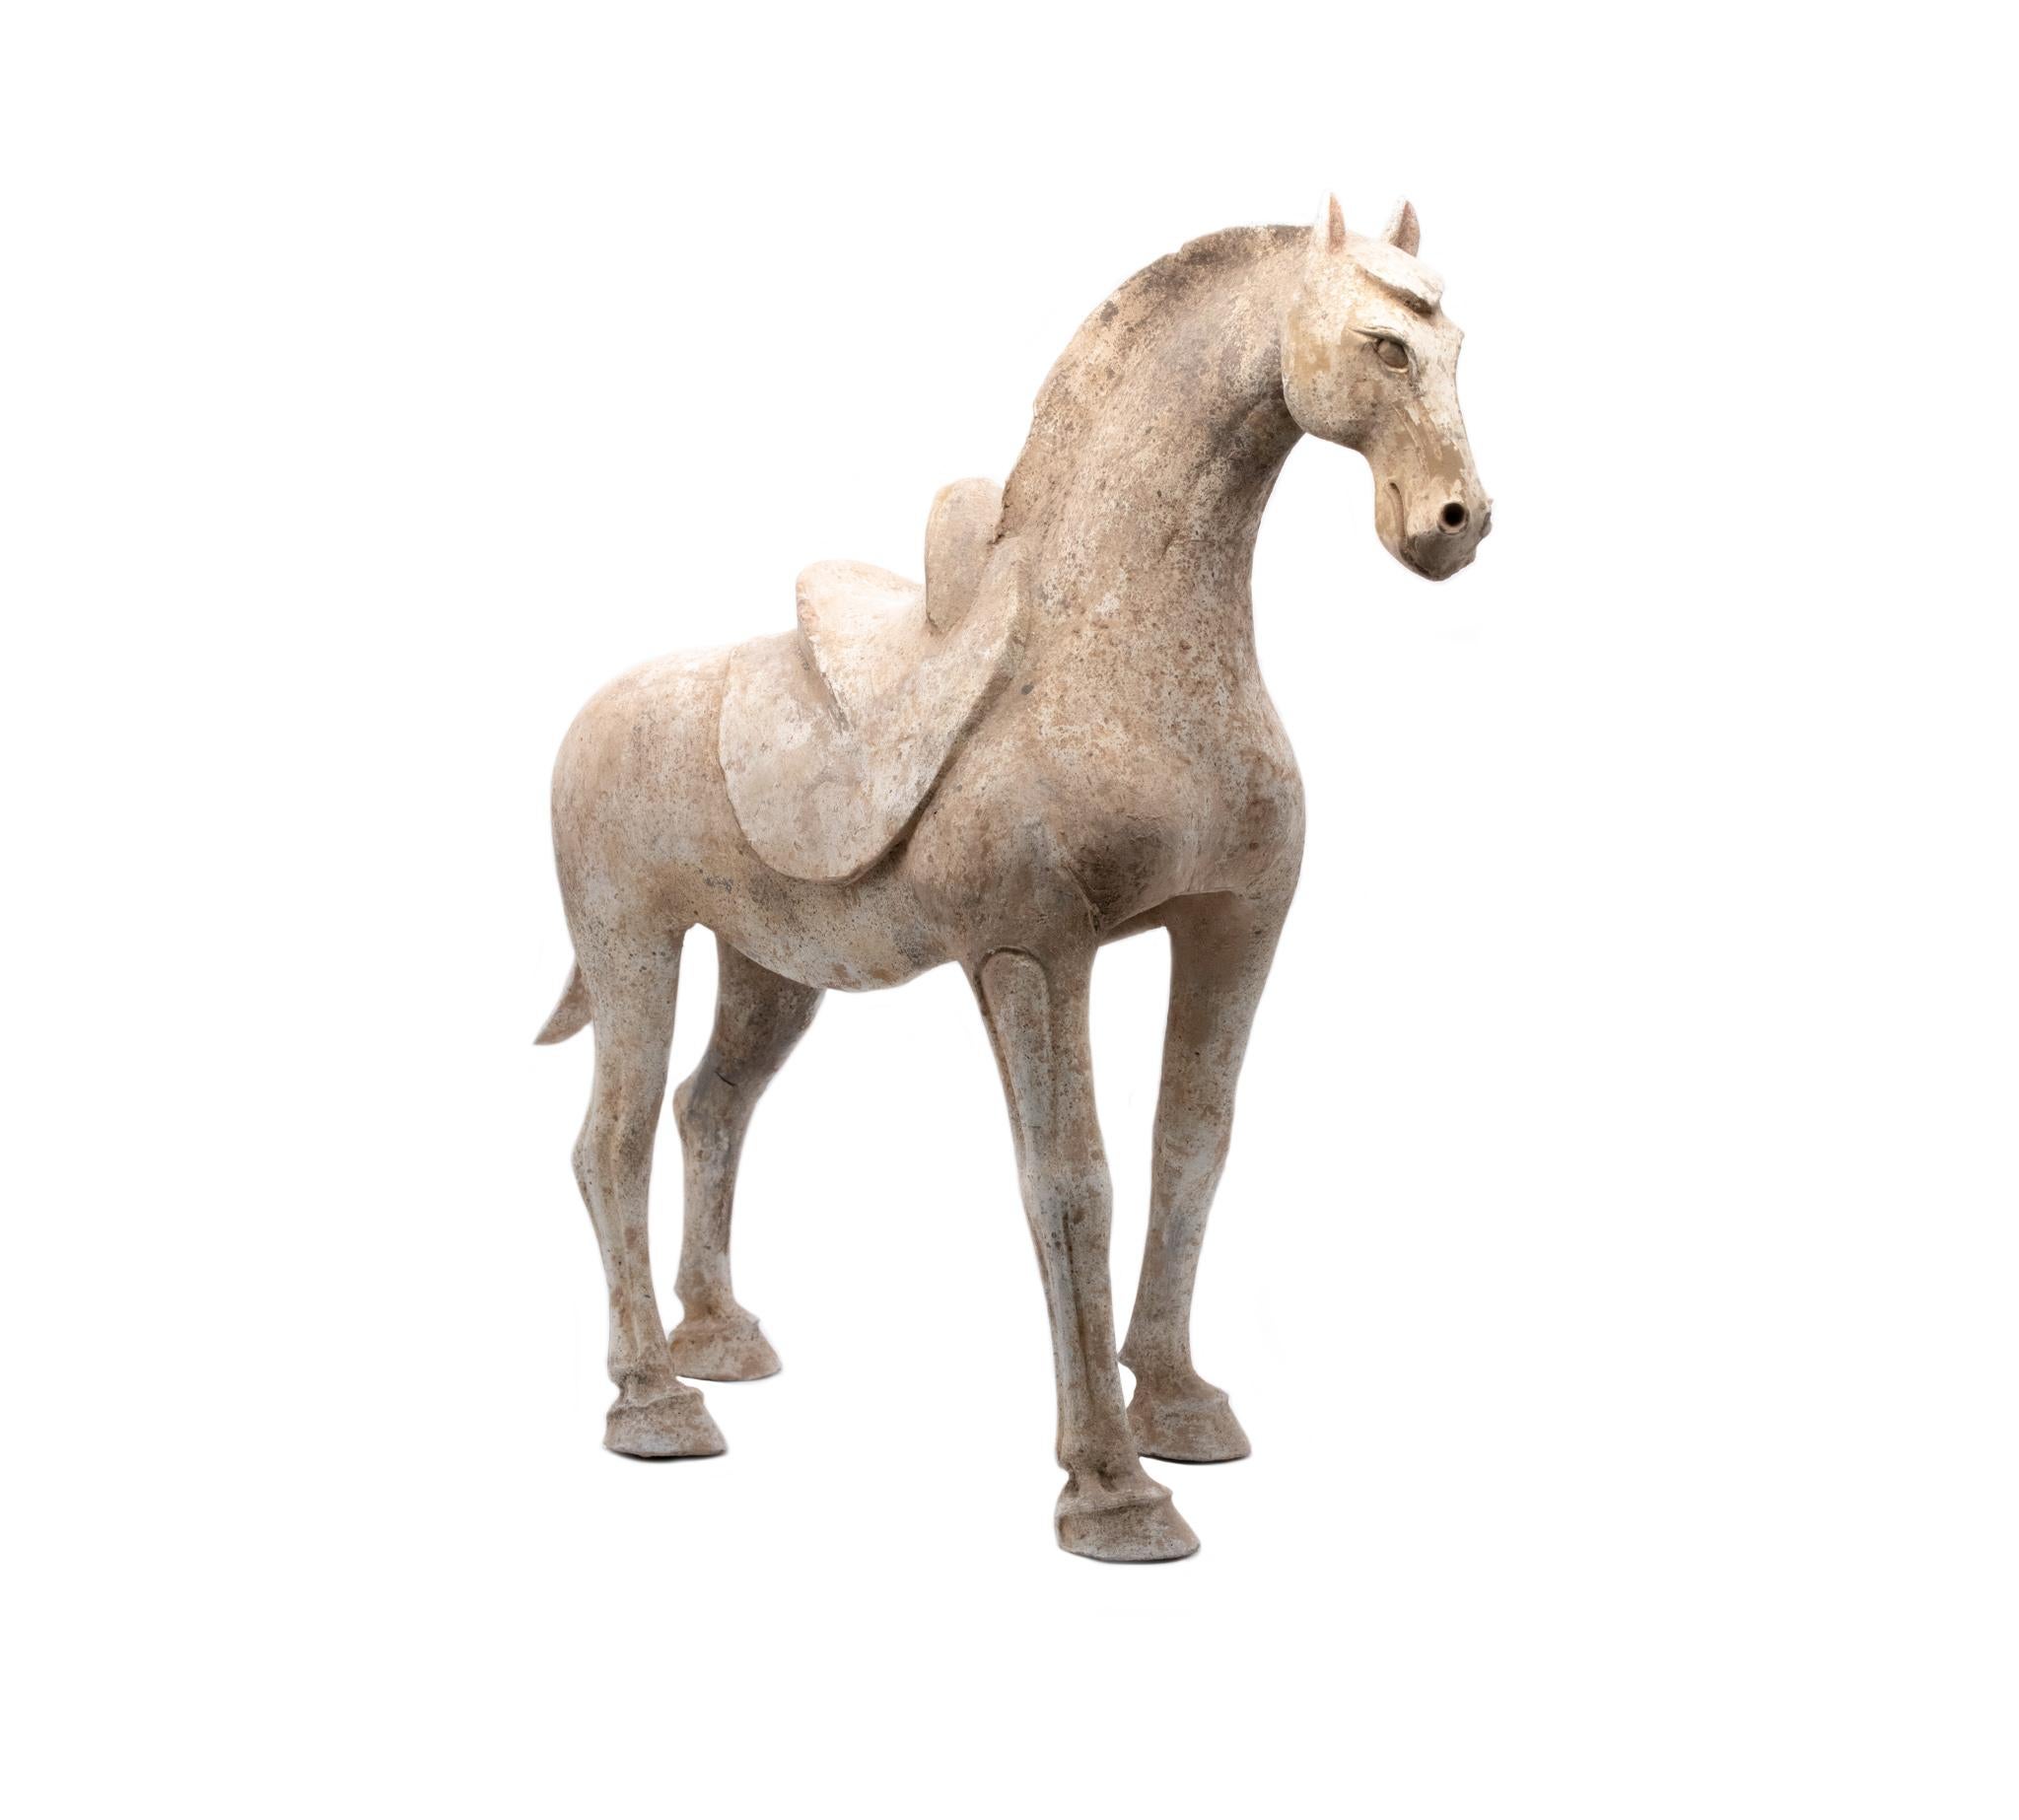 Stehendes Pferd aus der Tang-Dynastie 618-907 AD.

Wunderschönes skulpturales Kunstwerk aus der alten chinesischen Periode der Tang-Dynastie (618-907 n. Chr.) mit der fein skulpturalen Figur eines Pferdes, die sorgfältig aus Tonkeramik hergestellt